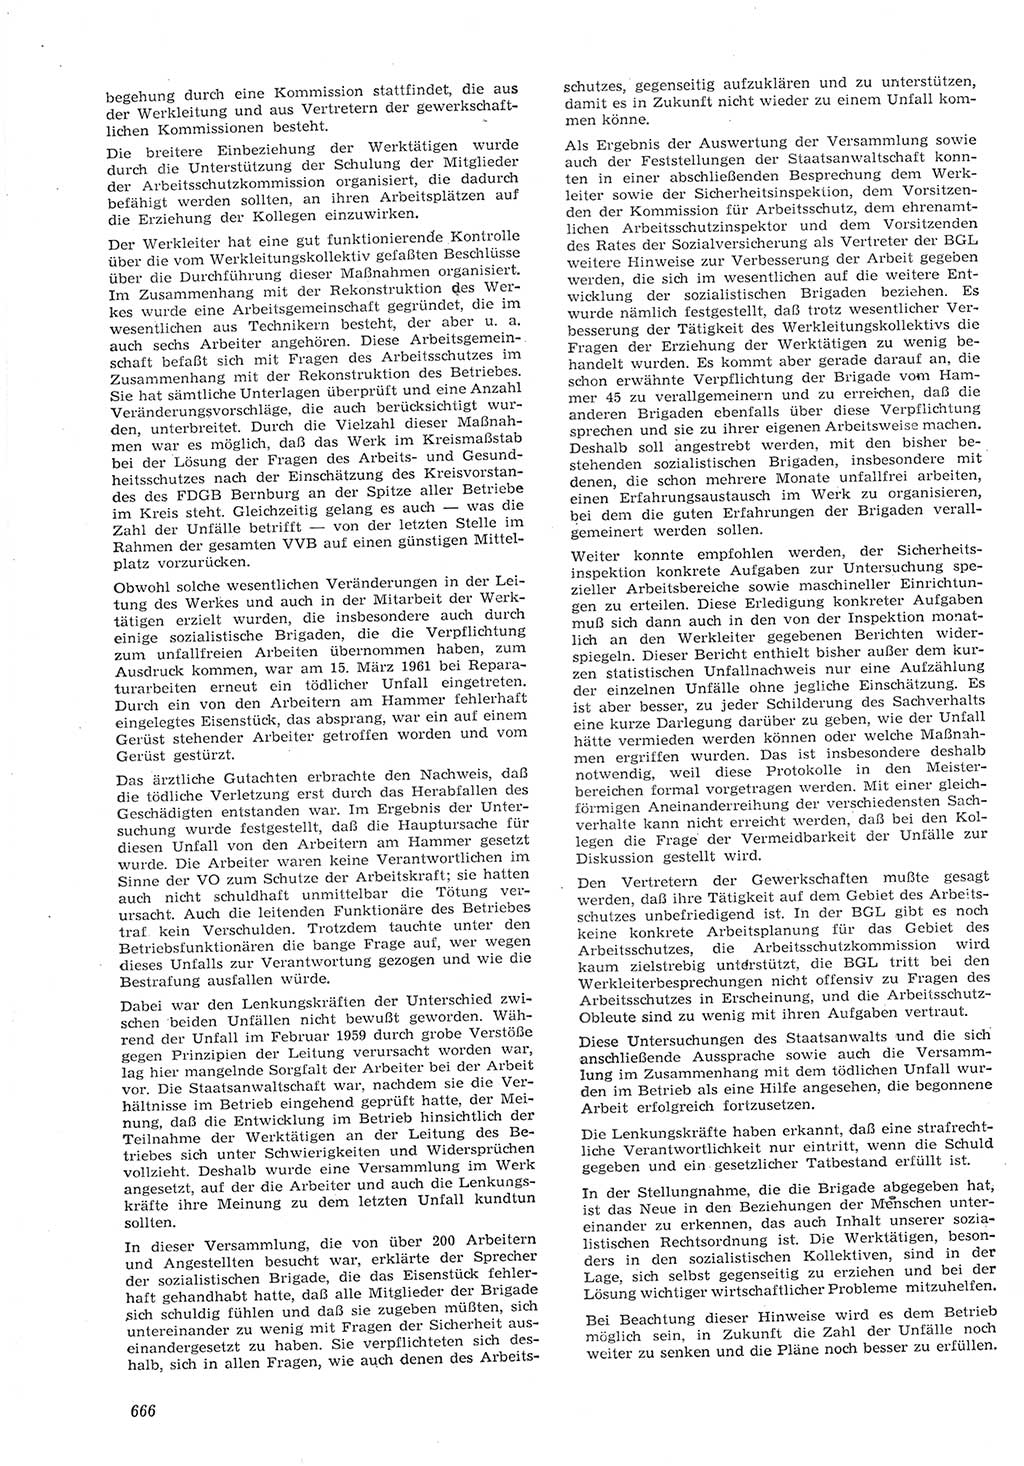 Neue Justiz (NJ), Zeitschrift für Recht und Rechtswissenschaft [Deutsche Demokratische Republik (DDR)], 15. Jahrgang 1961, Seite 666 (NJ DDR 1961, S. 666)